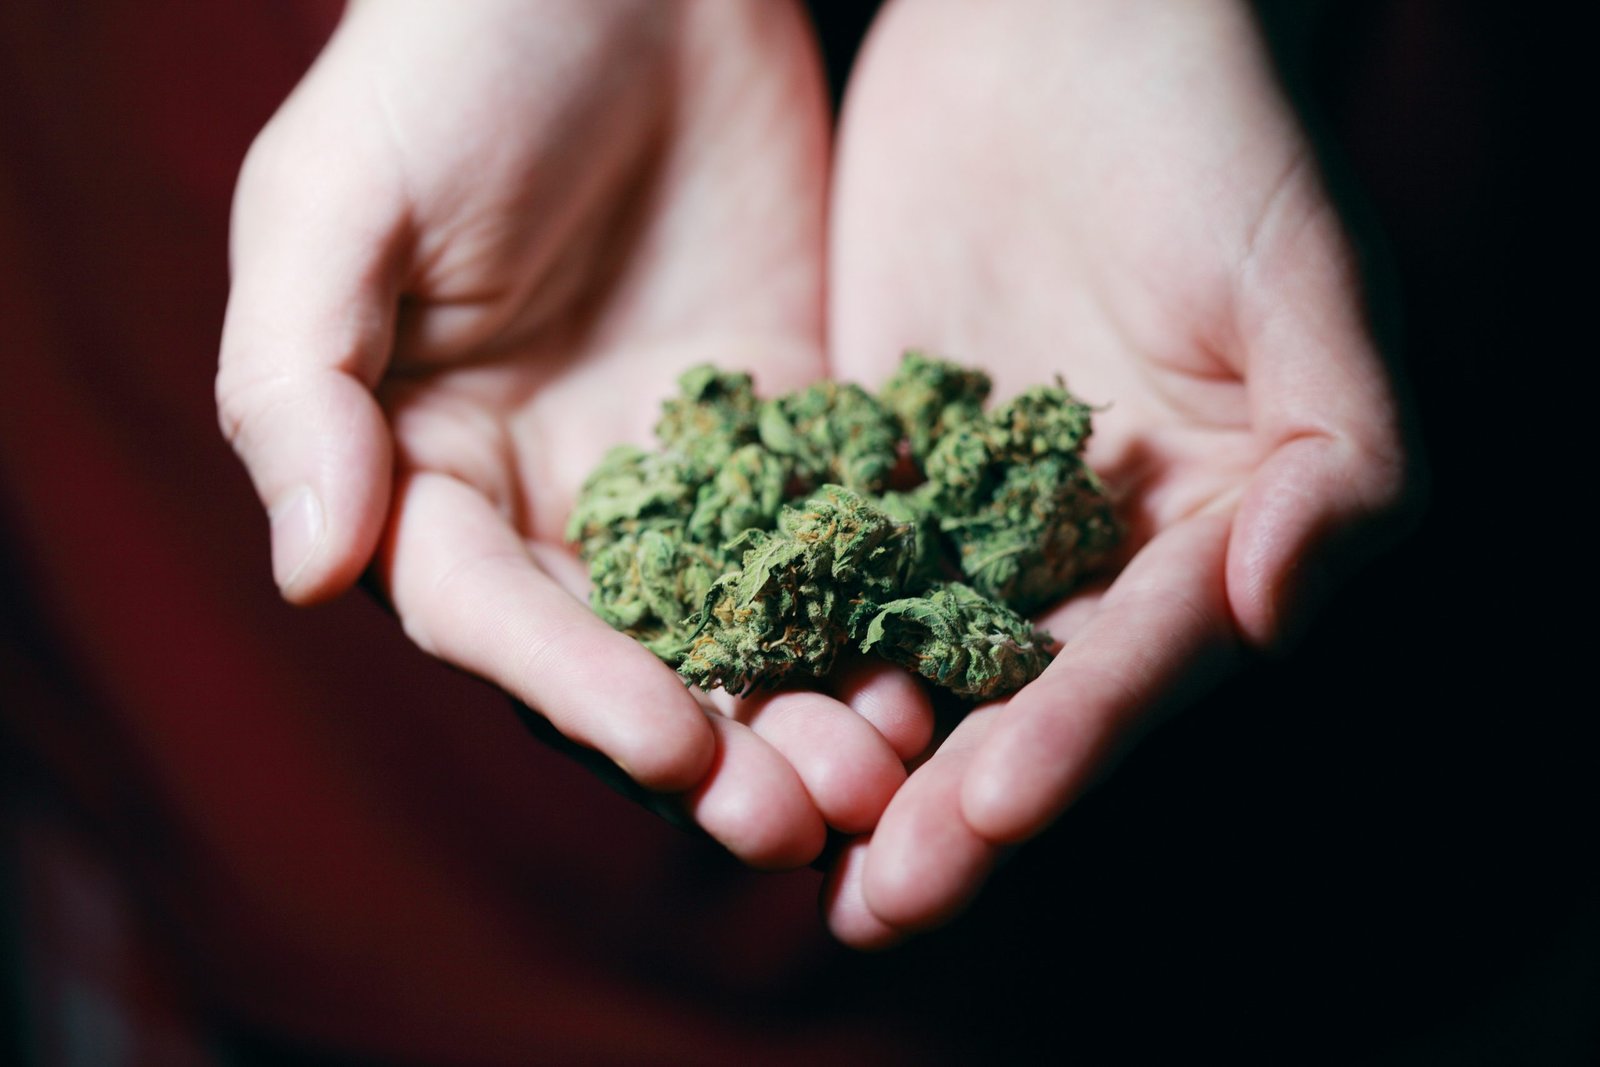 Marijuana Legalization 